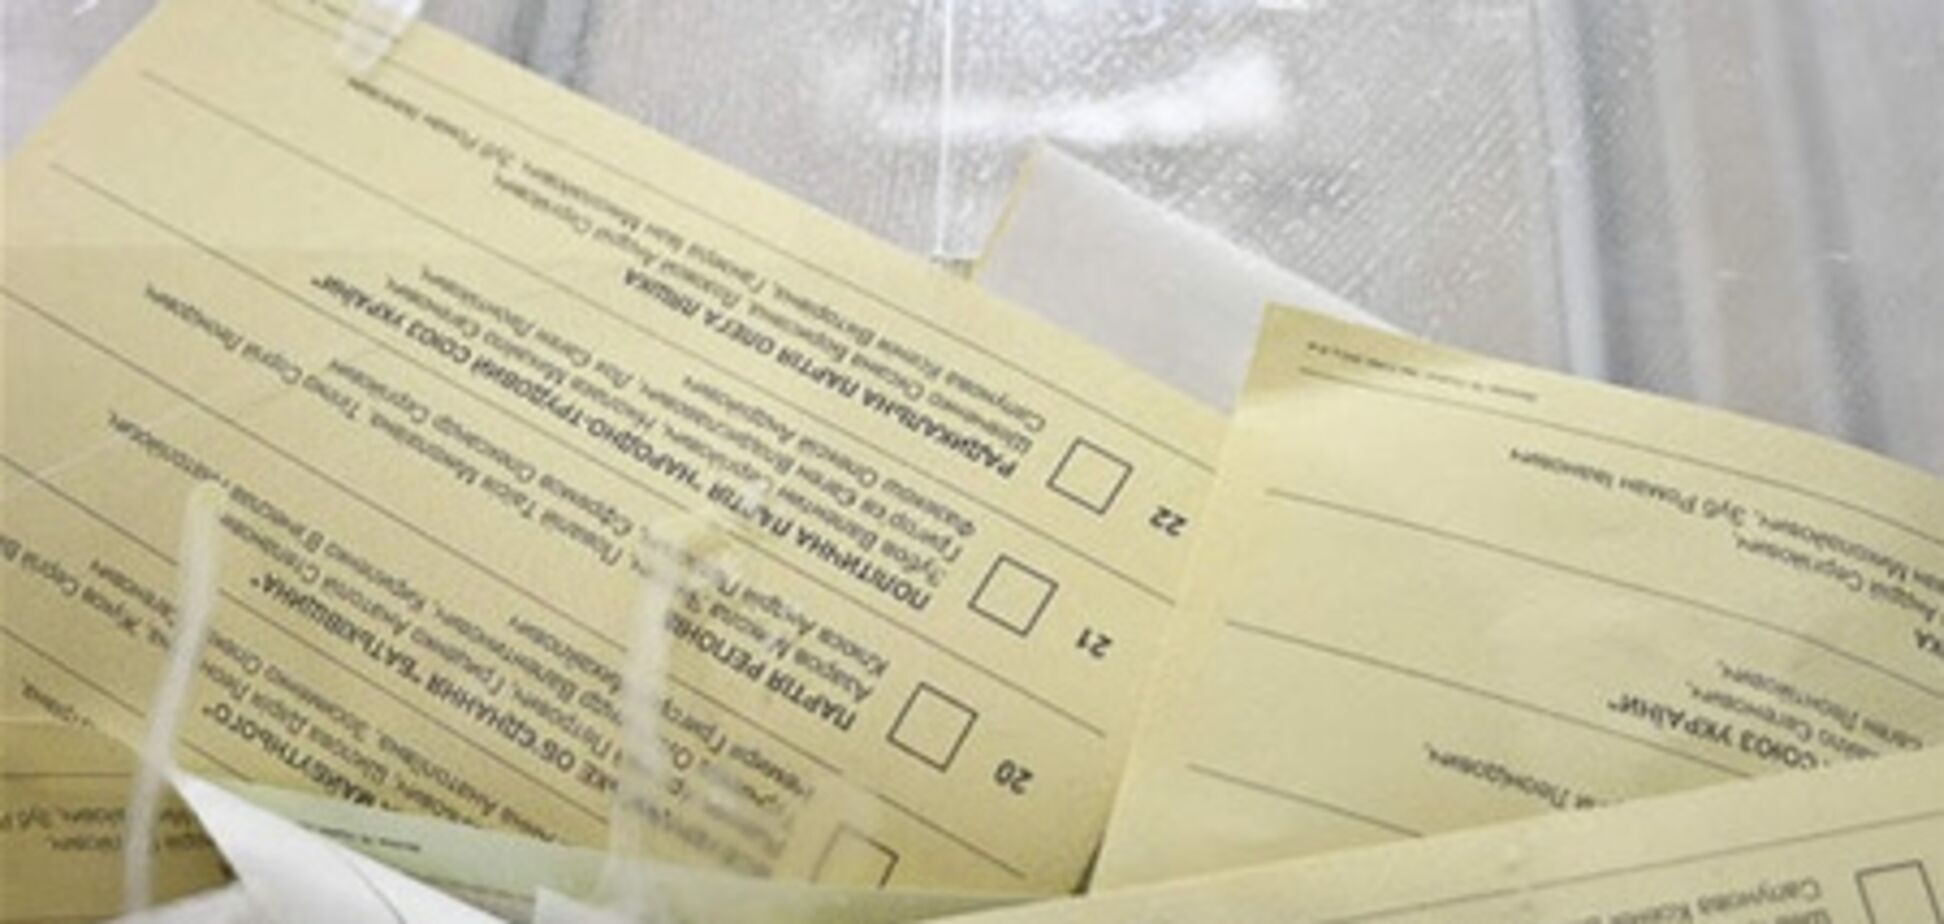 ЦИК официально признала результаты выборов